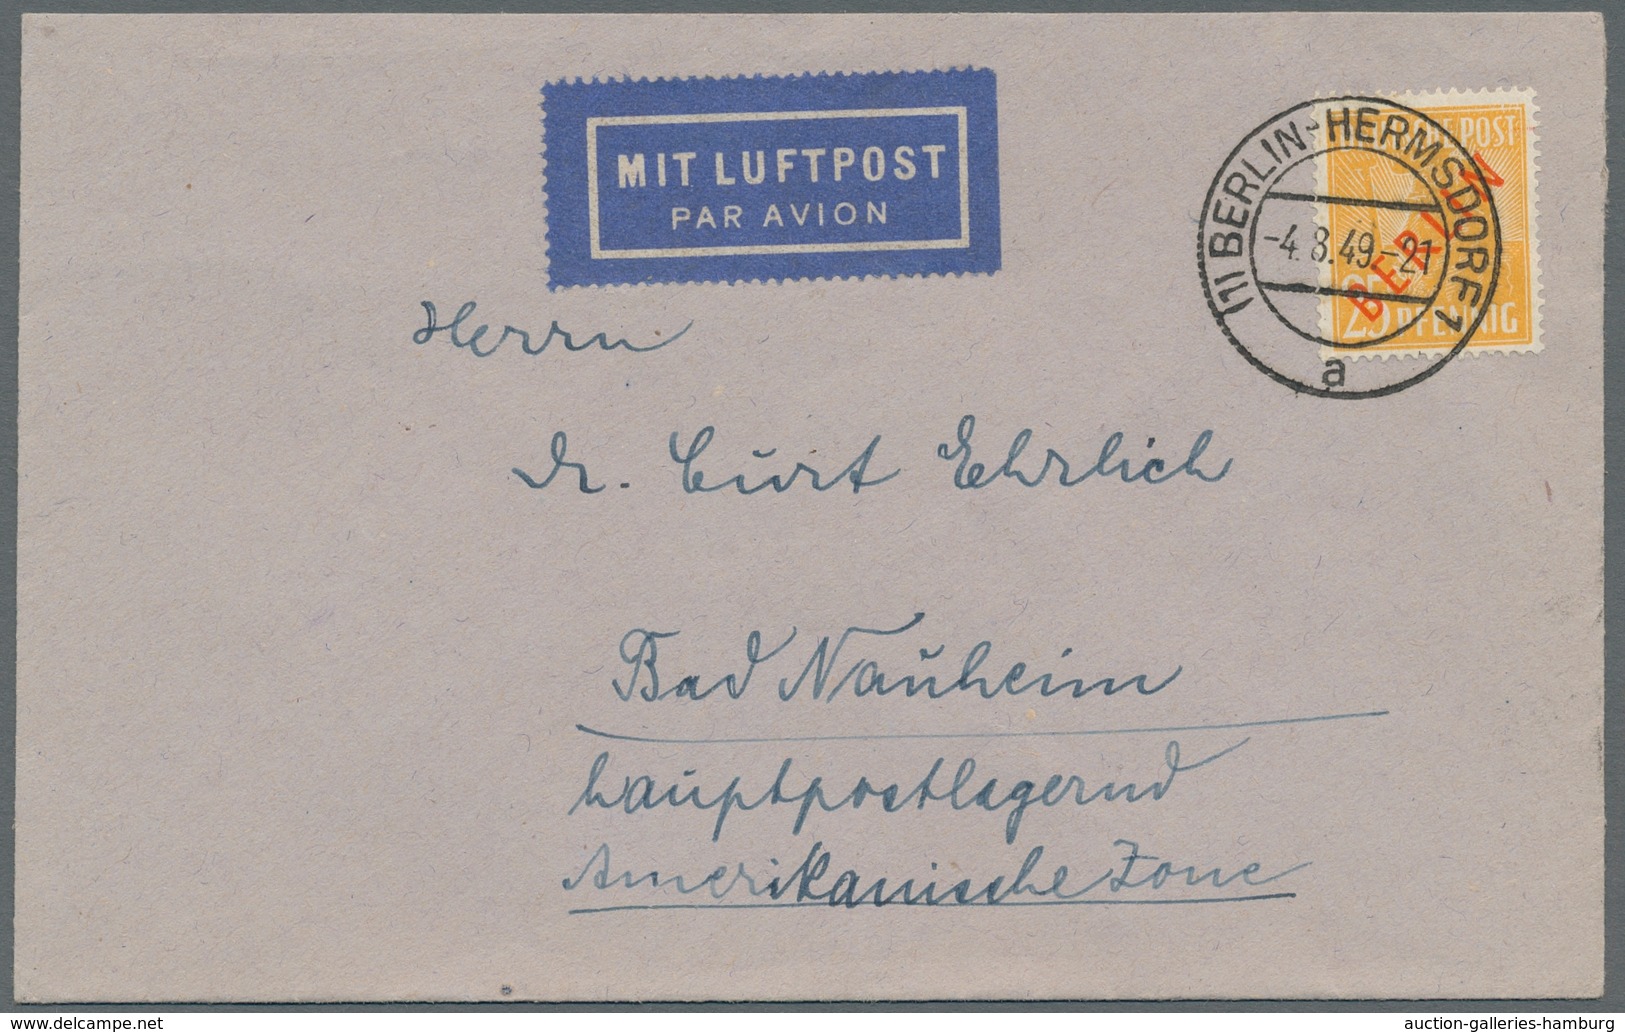 Berlin: 1949, "Rotaufdruck", kleine Zusammenstellung von elf portorichtigen EF in guter/sehr guter E